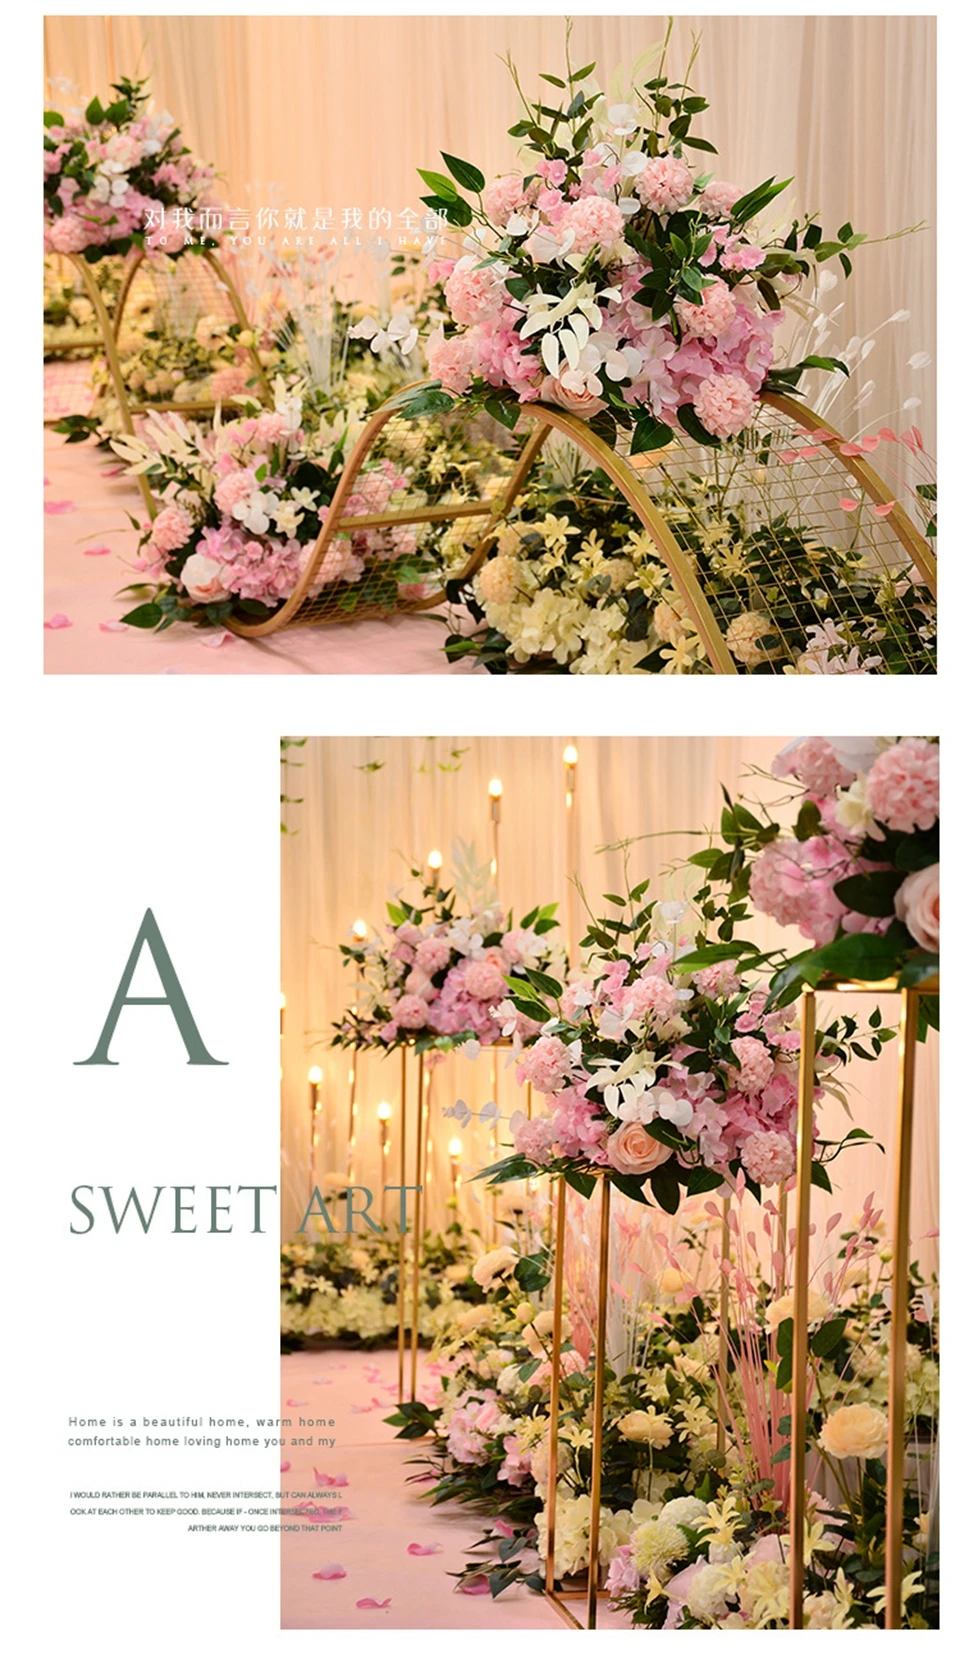 Хорошо Продаем Горячие Искусственные цветы пилота стиль красочные свадебные искусственные цветы для свадьбы сценические украшения для витрин